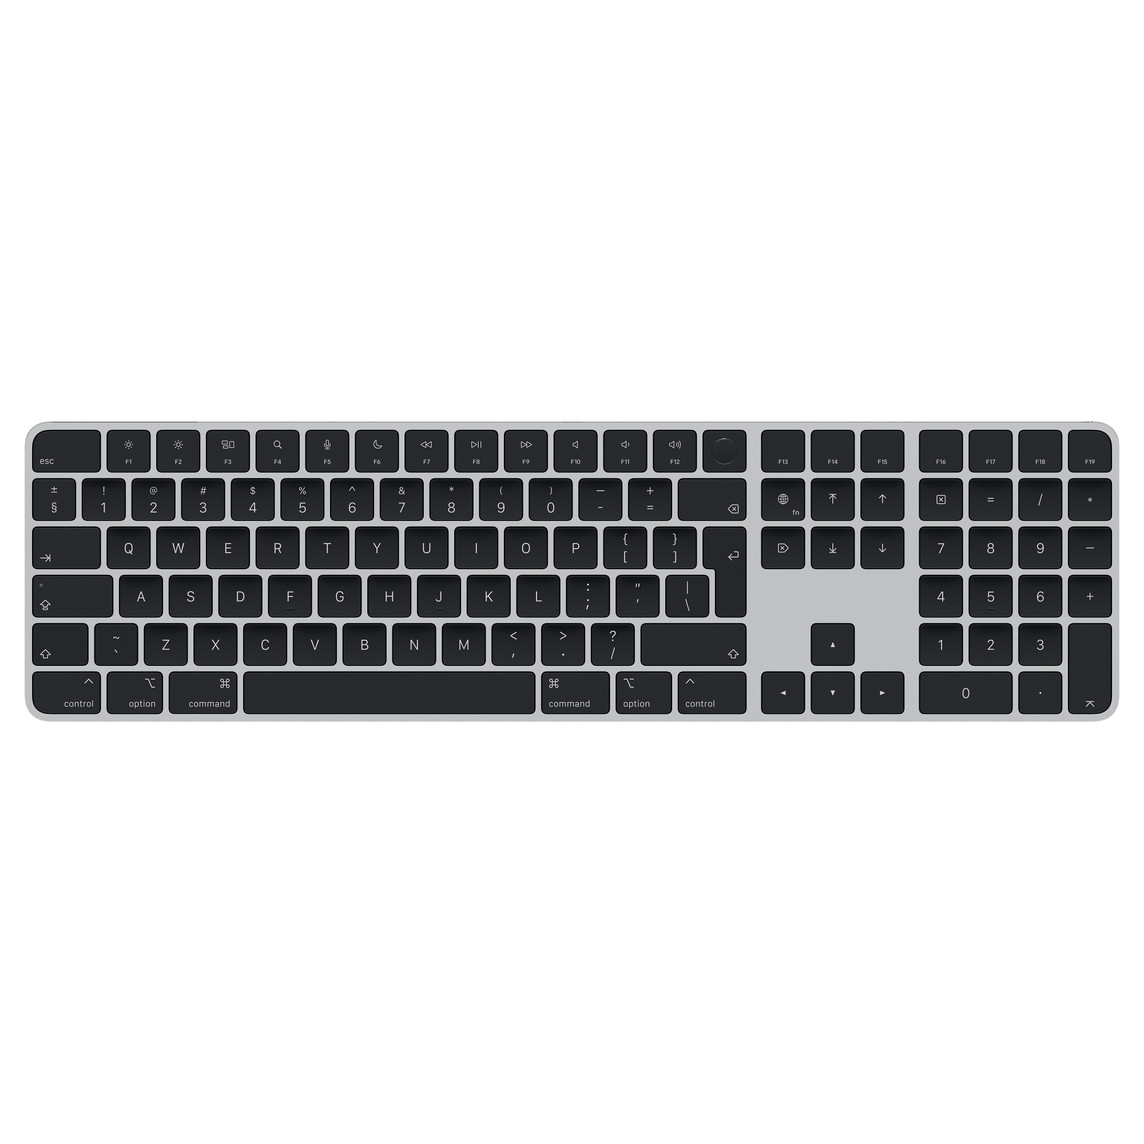 Magic Keyboard com teclado numérico preto, com teclas de seta dispostas em T invertido e teclas de página para cima e página para baixo dedicadas.